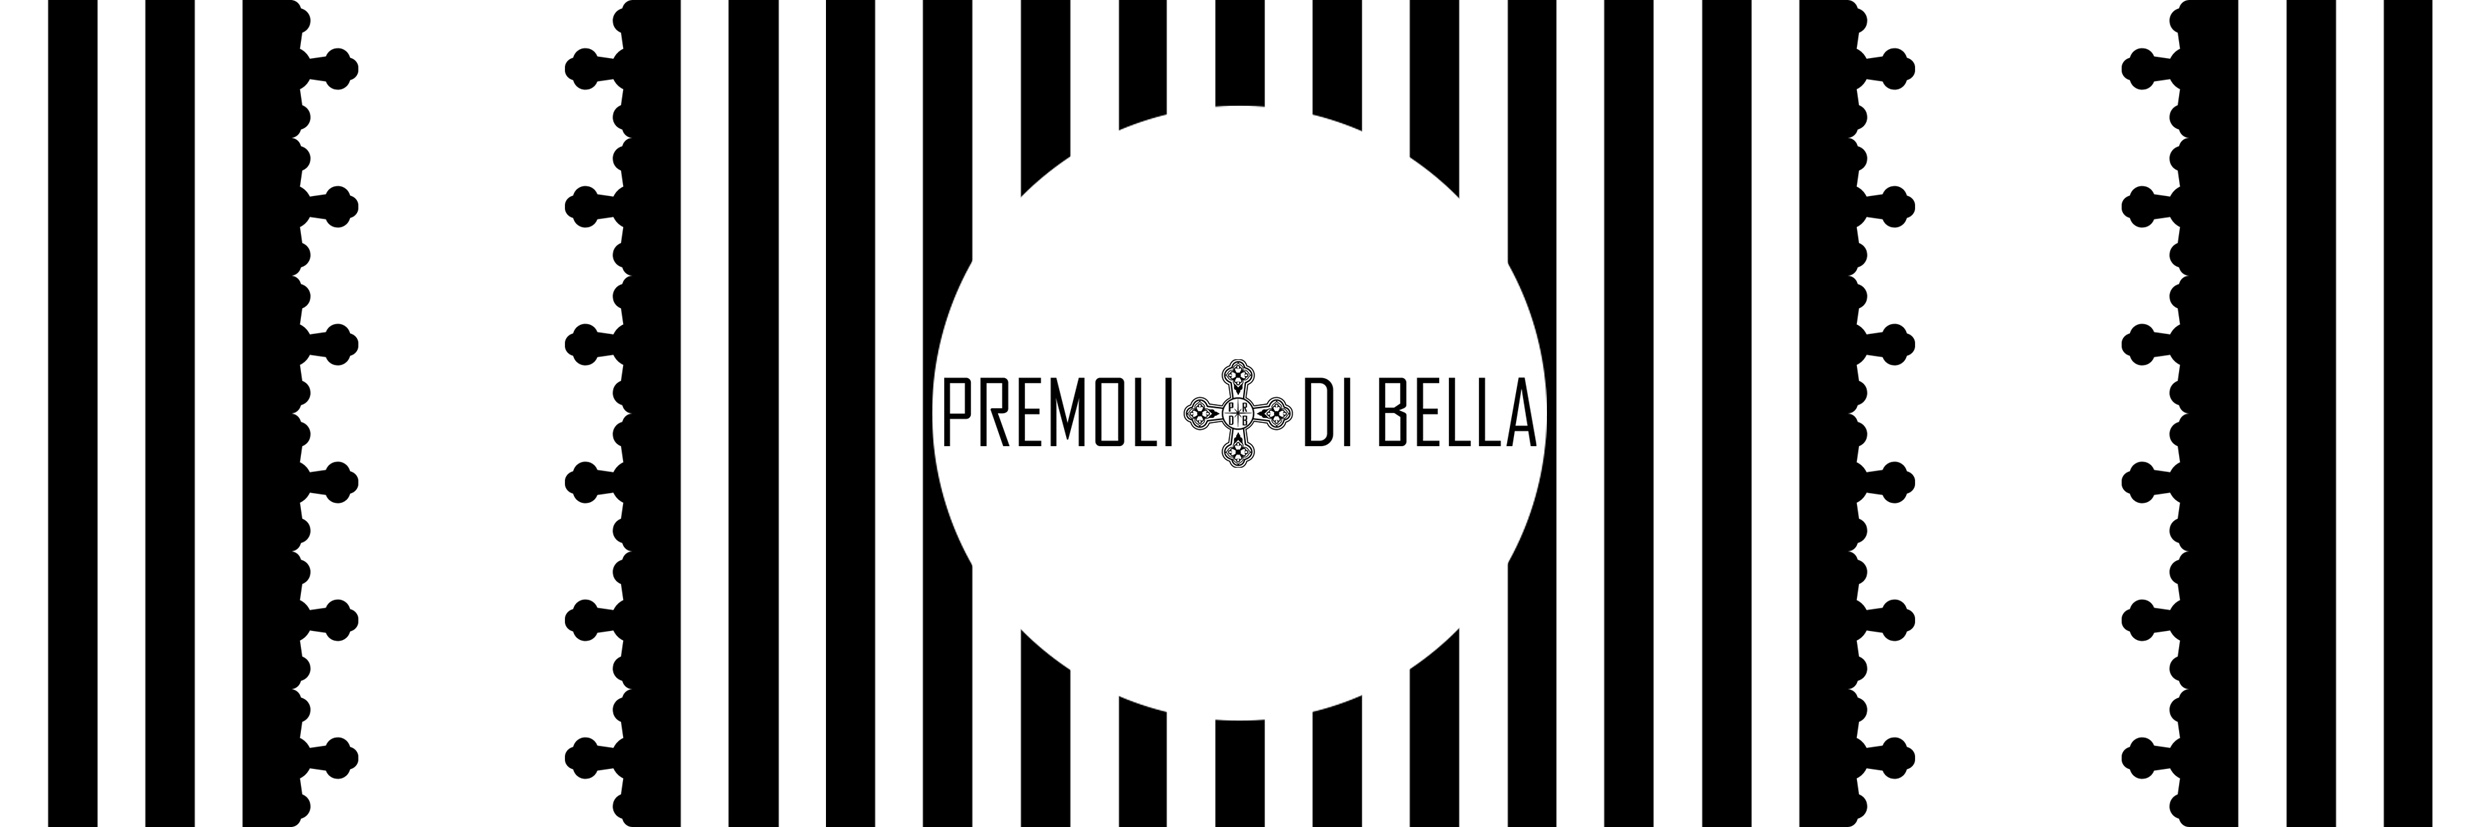 Premoli+Di Bella, Premoli + Di Bella, Di Bella, Premoli